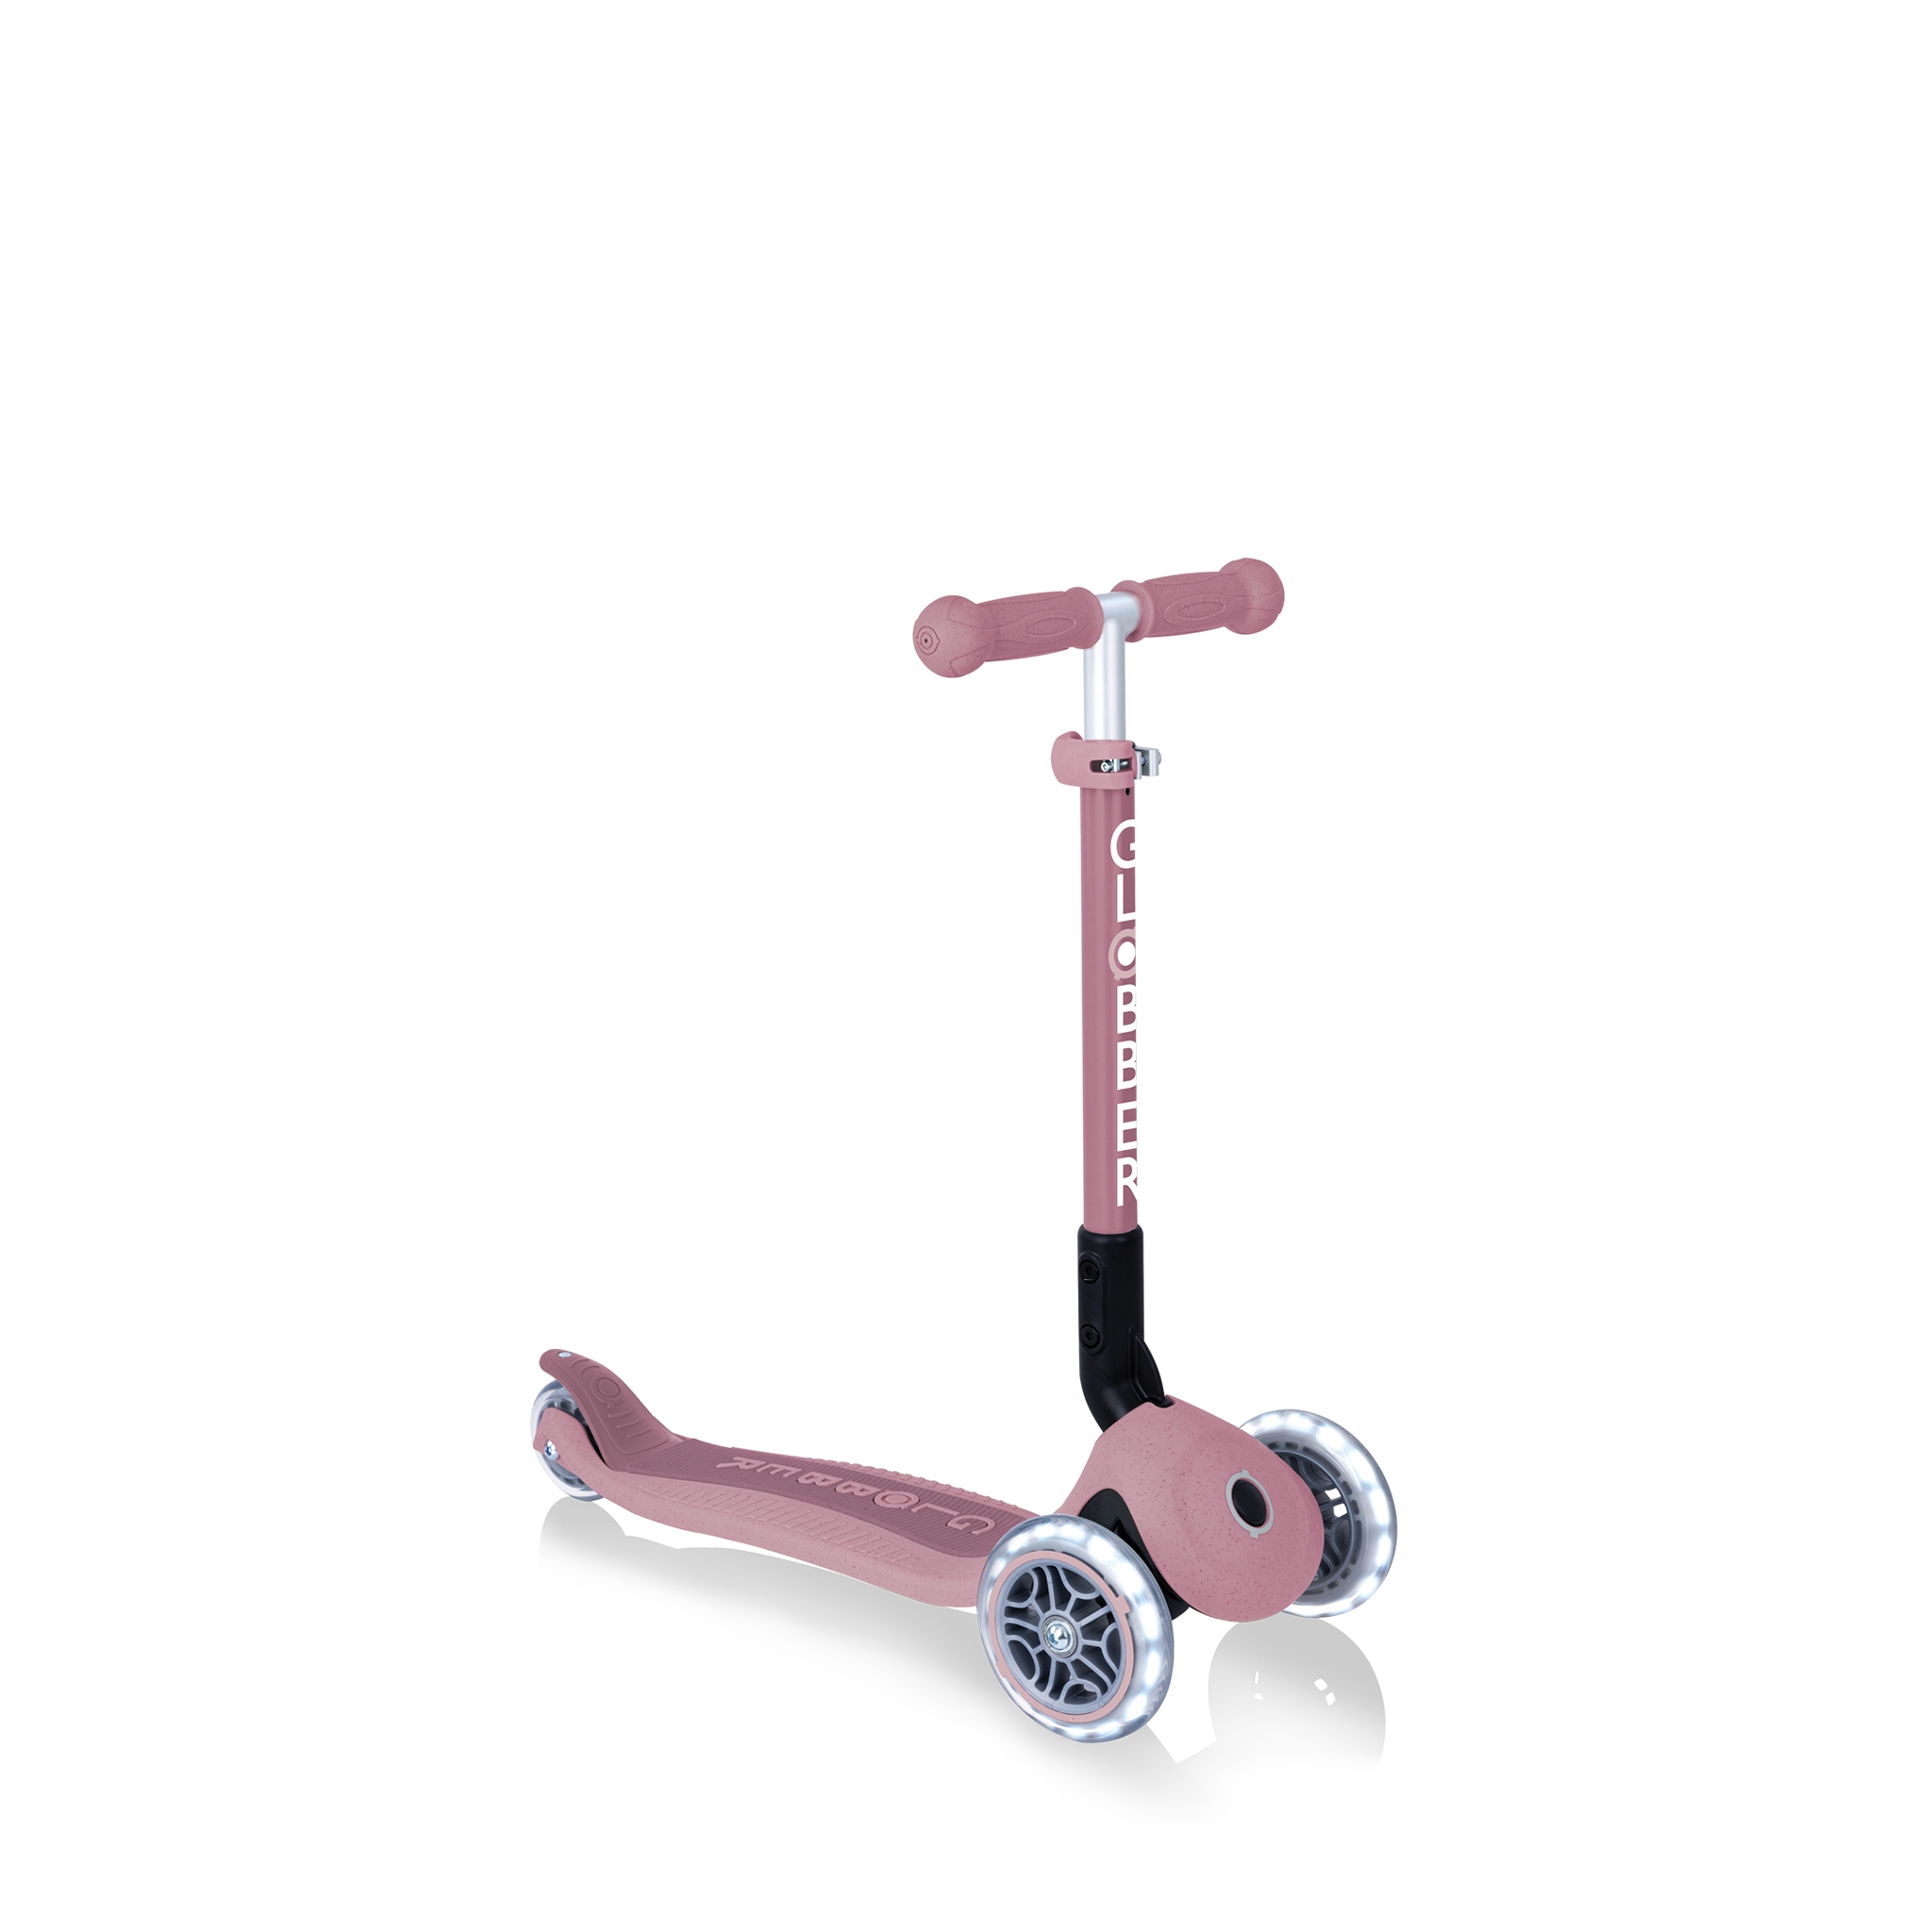 La trottinette 3 roues rose, idéale pour apprendre l'équilibre